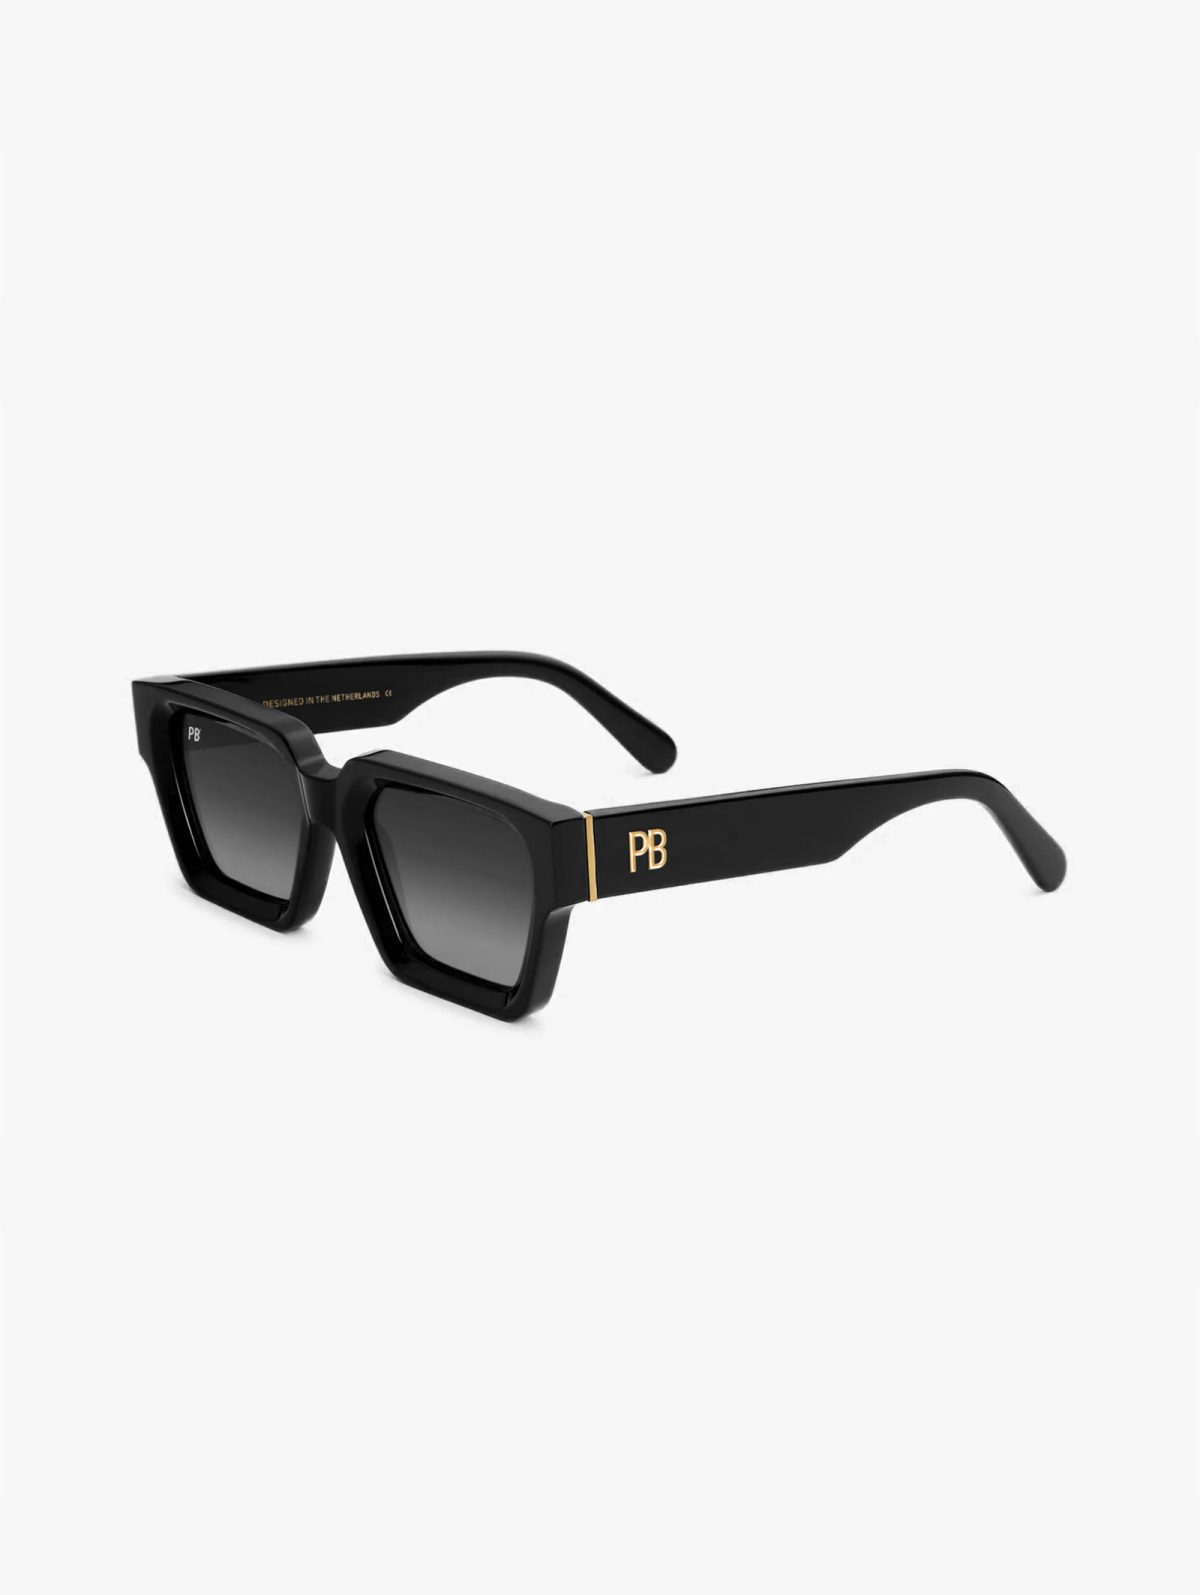 Luxor Acetate Black PB Sunglasses